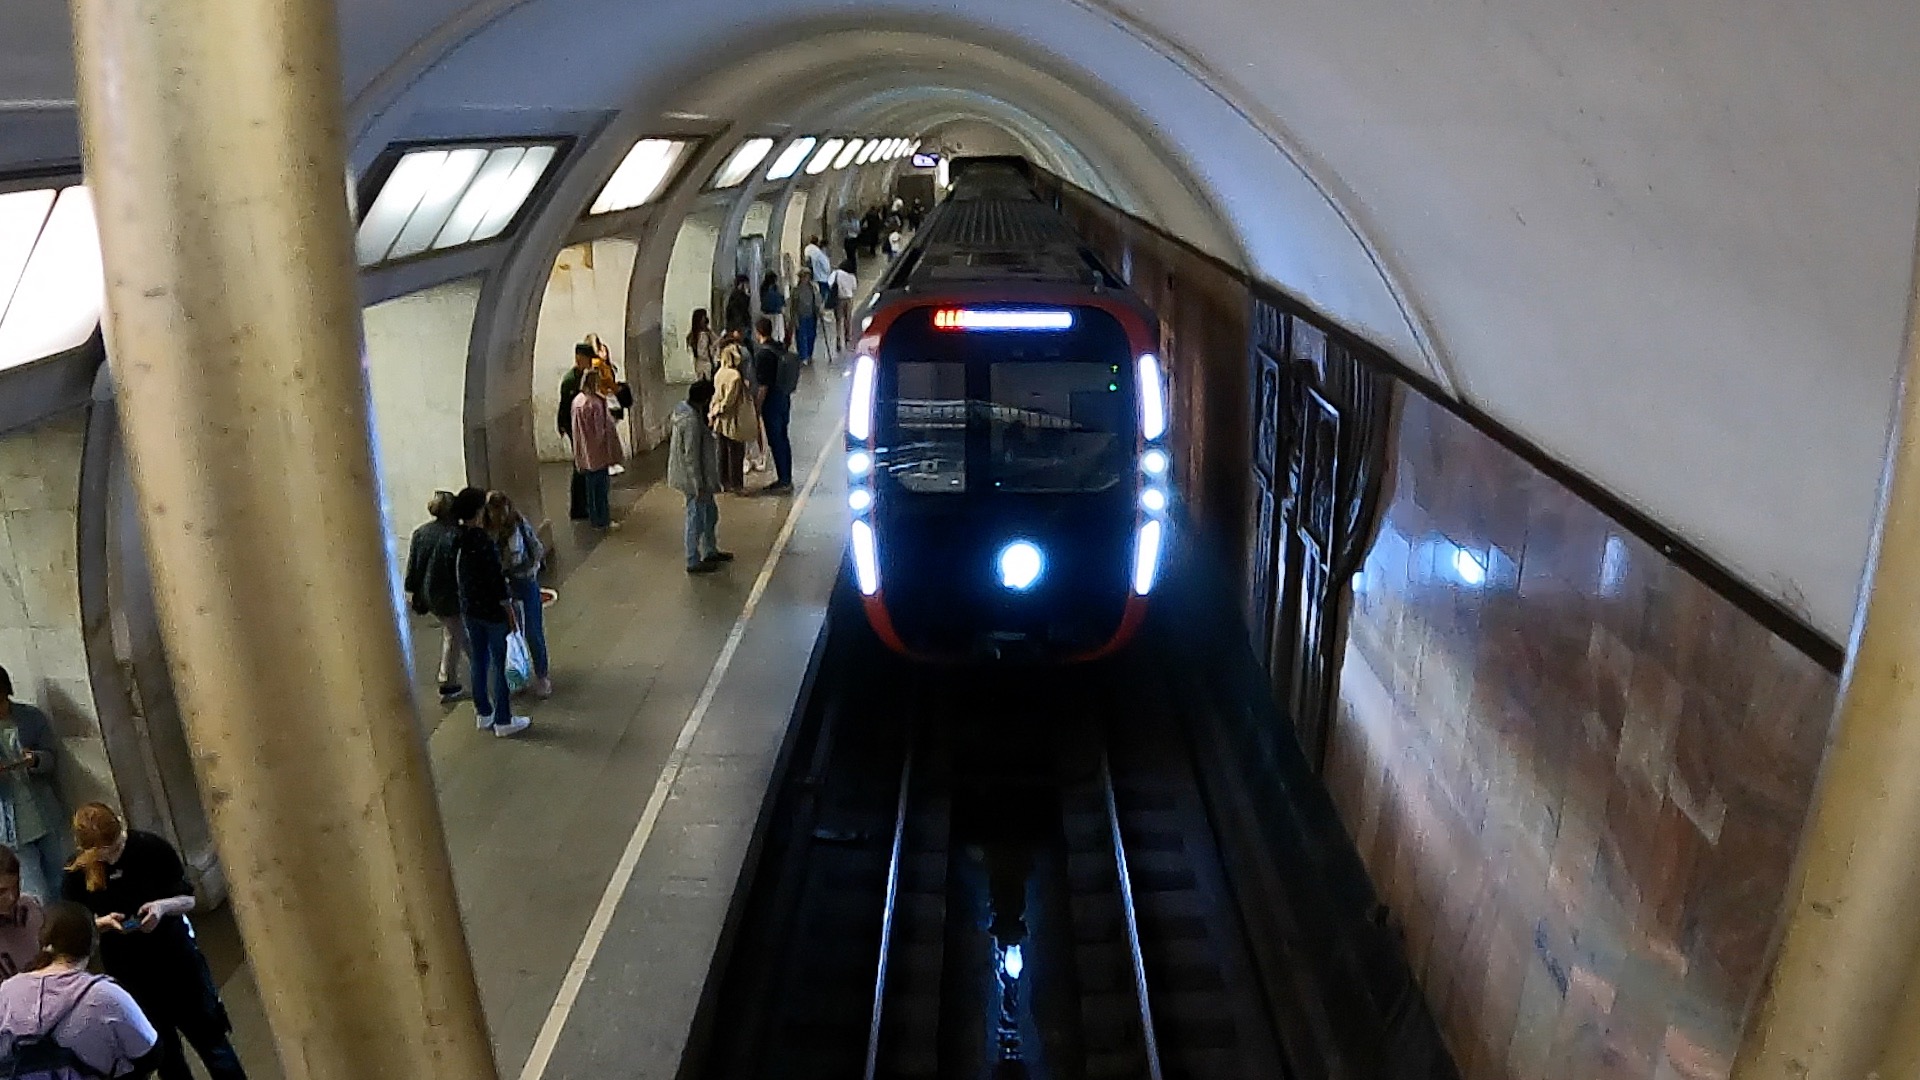 Смотрим сверху на поезда метро / Поезд выезжает из тоннеля и заезжает в тоннель